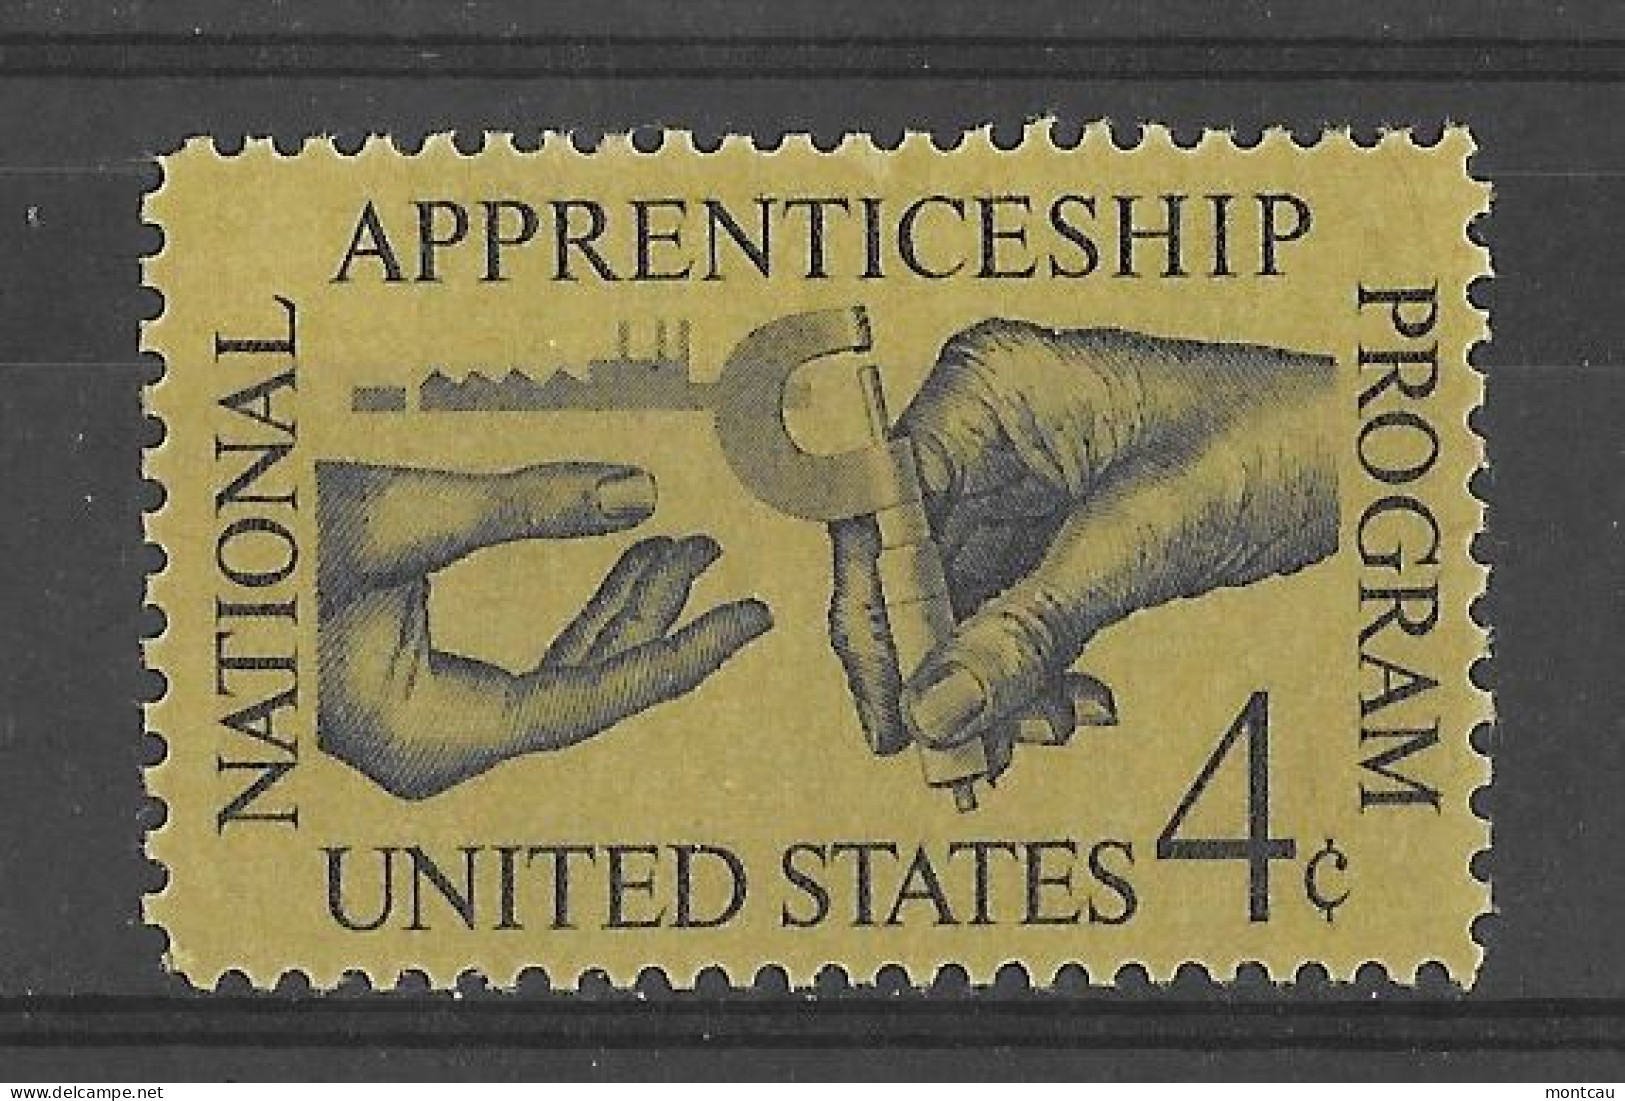 USA 1962.  Apprenticeship Sc 1201  (**) - Nuevos